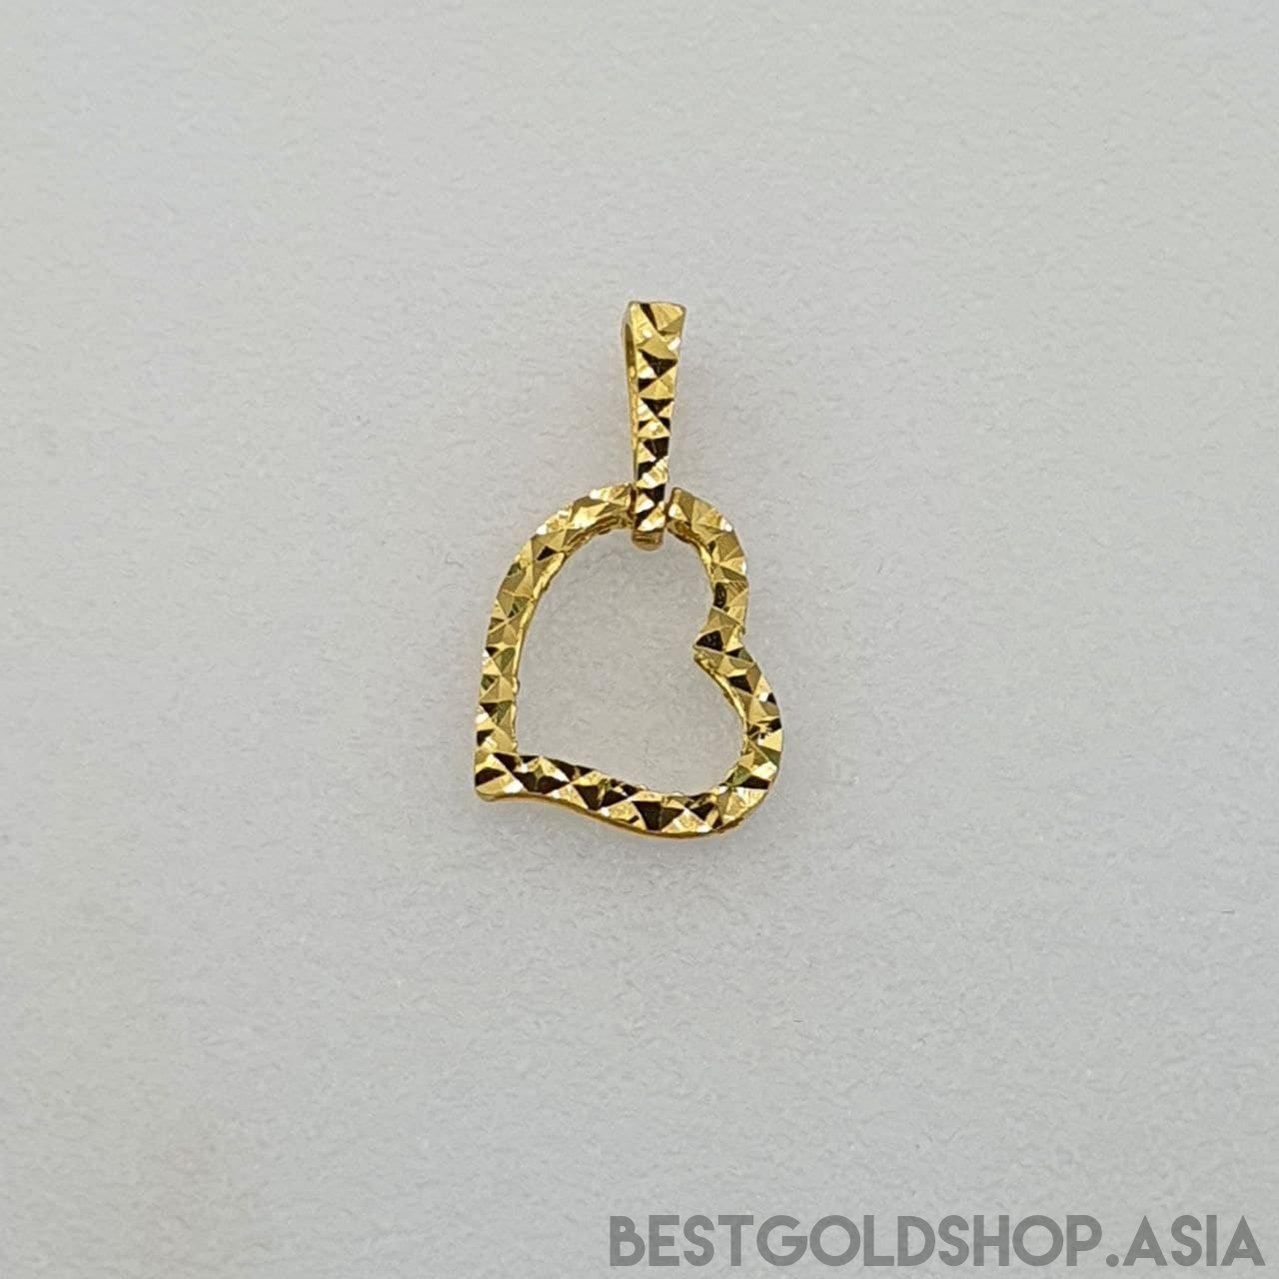 22k / 916 Gold Heart Pendant V2-916 gold-Best Gold Shop